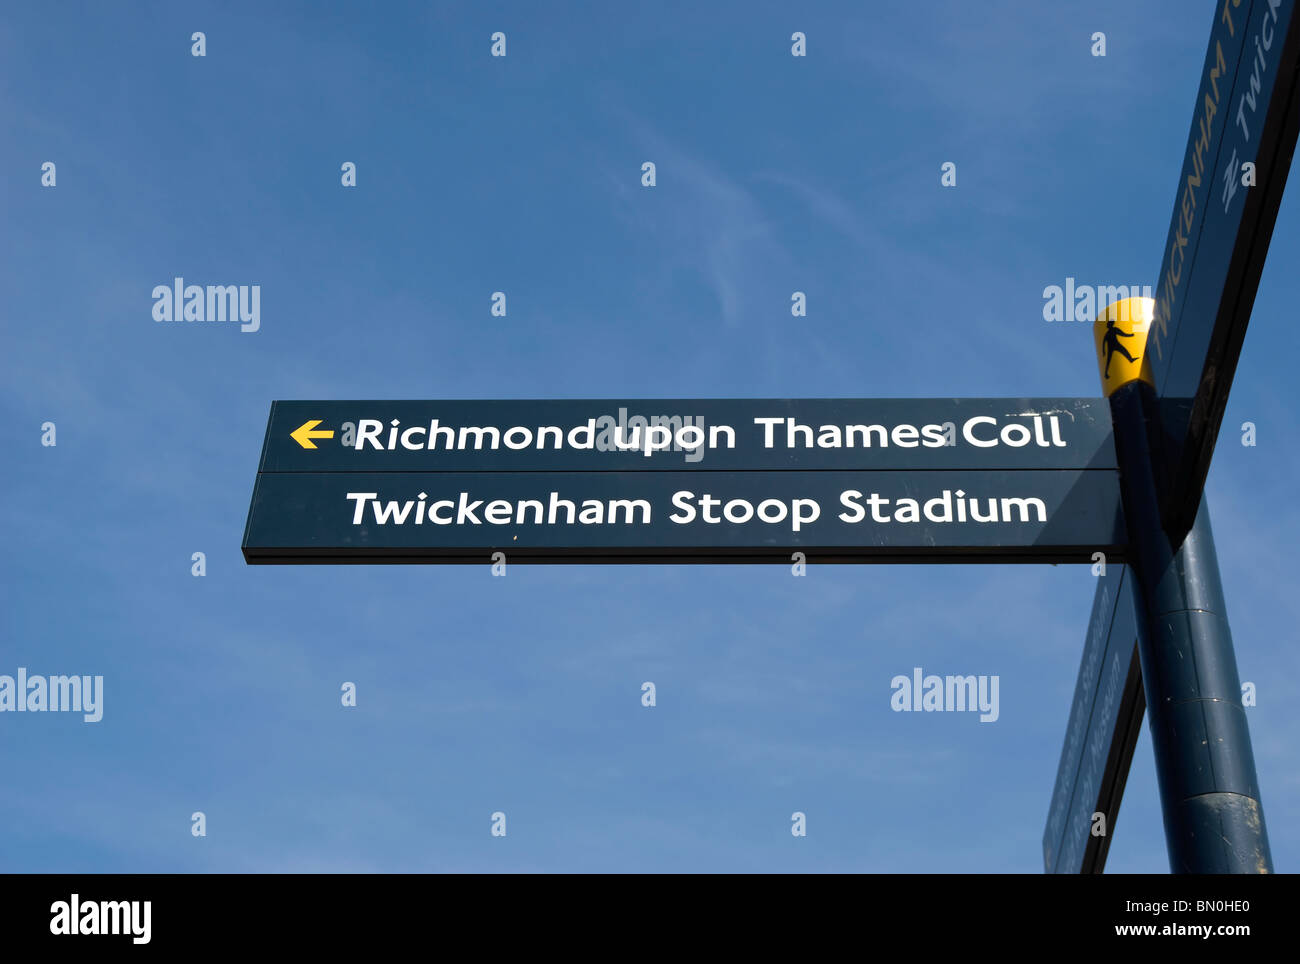 Indicazione le direzioni per Richmond upon Thames college e Stadio di Twickenham Stoop, a Twickenham, middlesex, Inghilterra Foto Stock